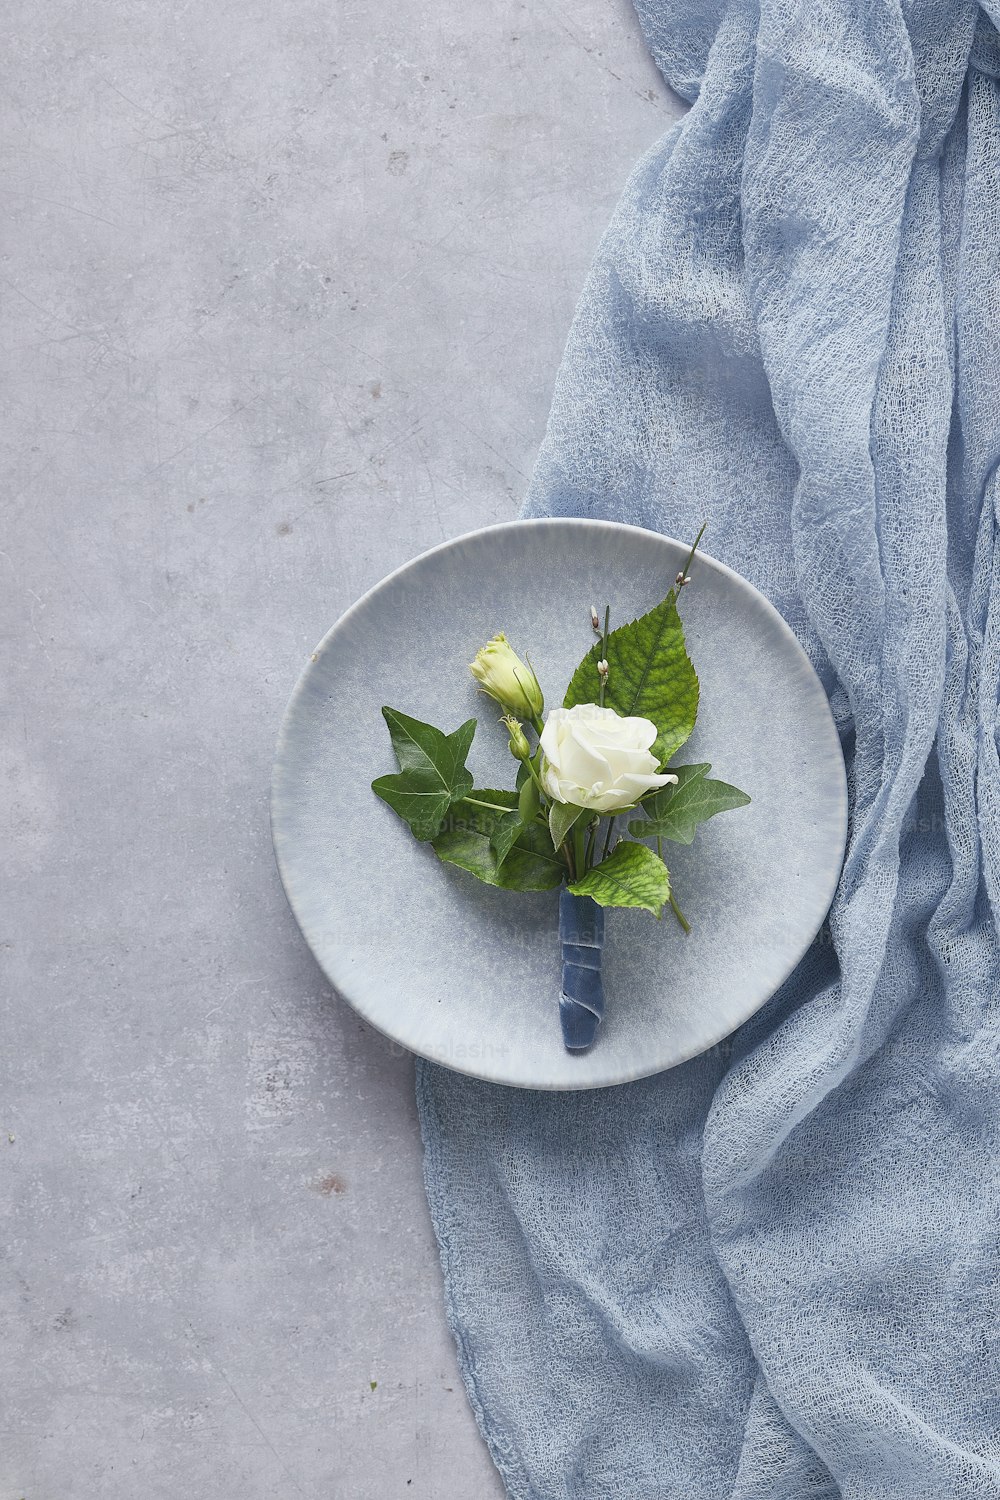 una rosa blanca en un plato sobre una tela azul